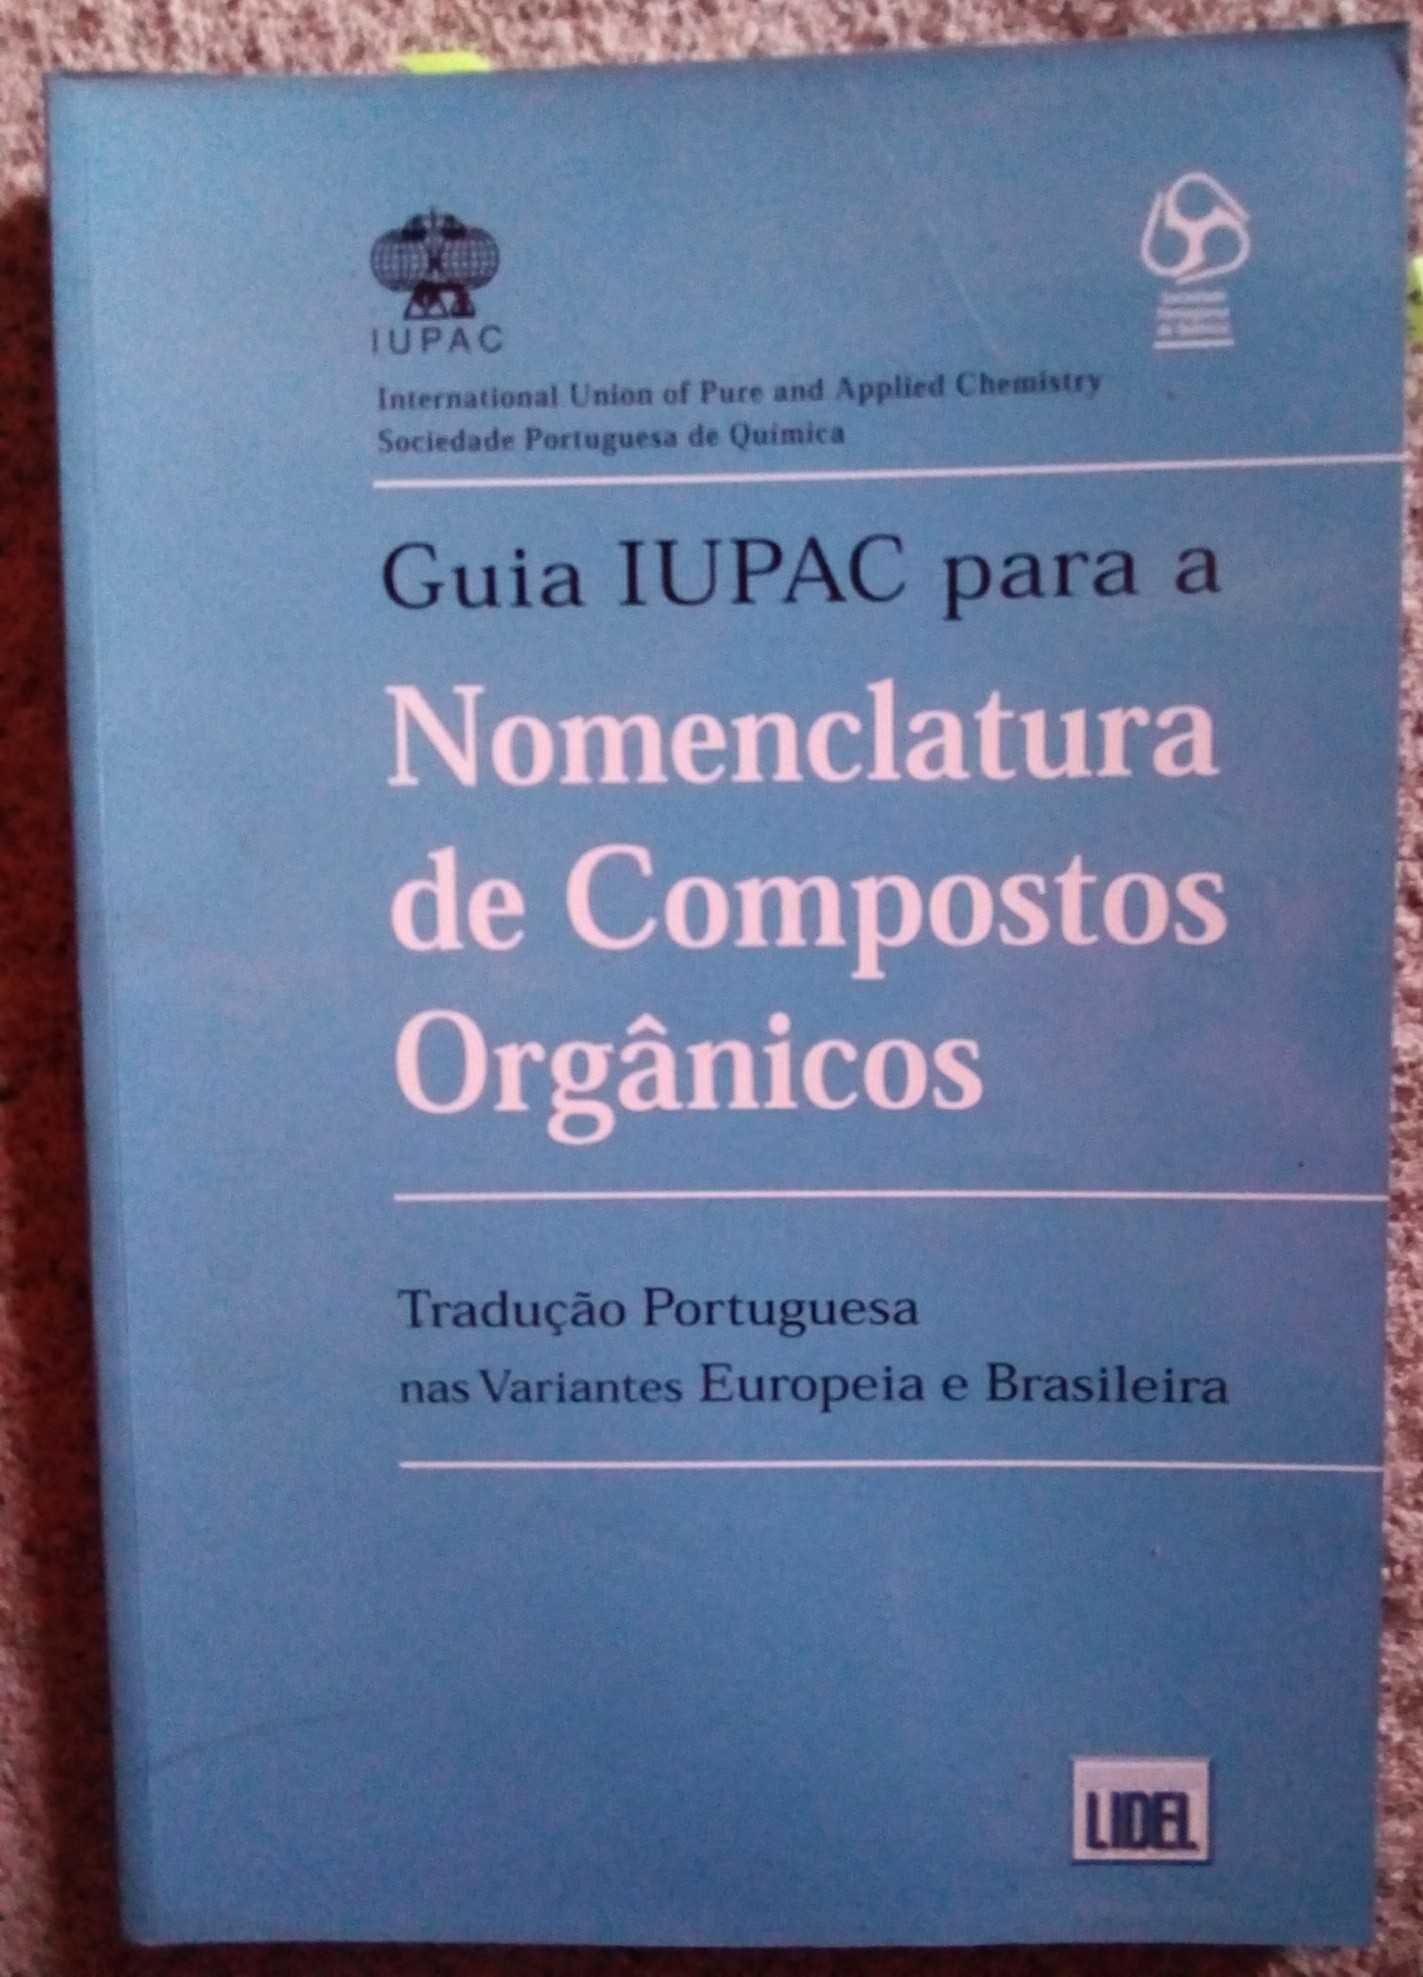 Livro "Nomenclatura de compostos orgânicos"